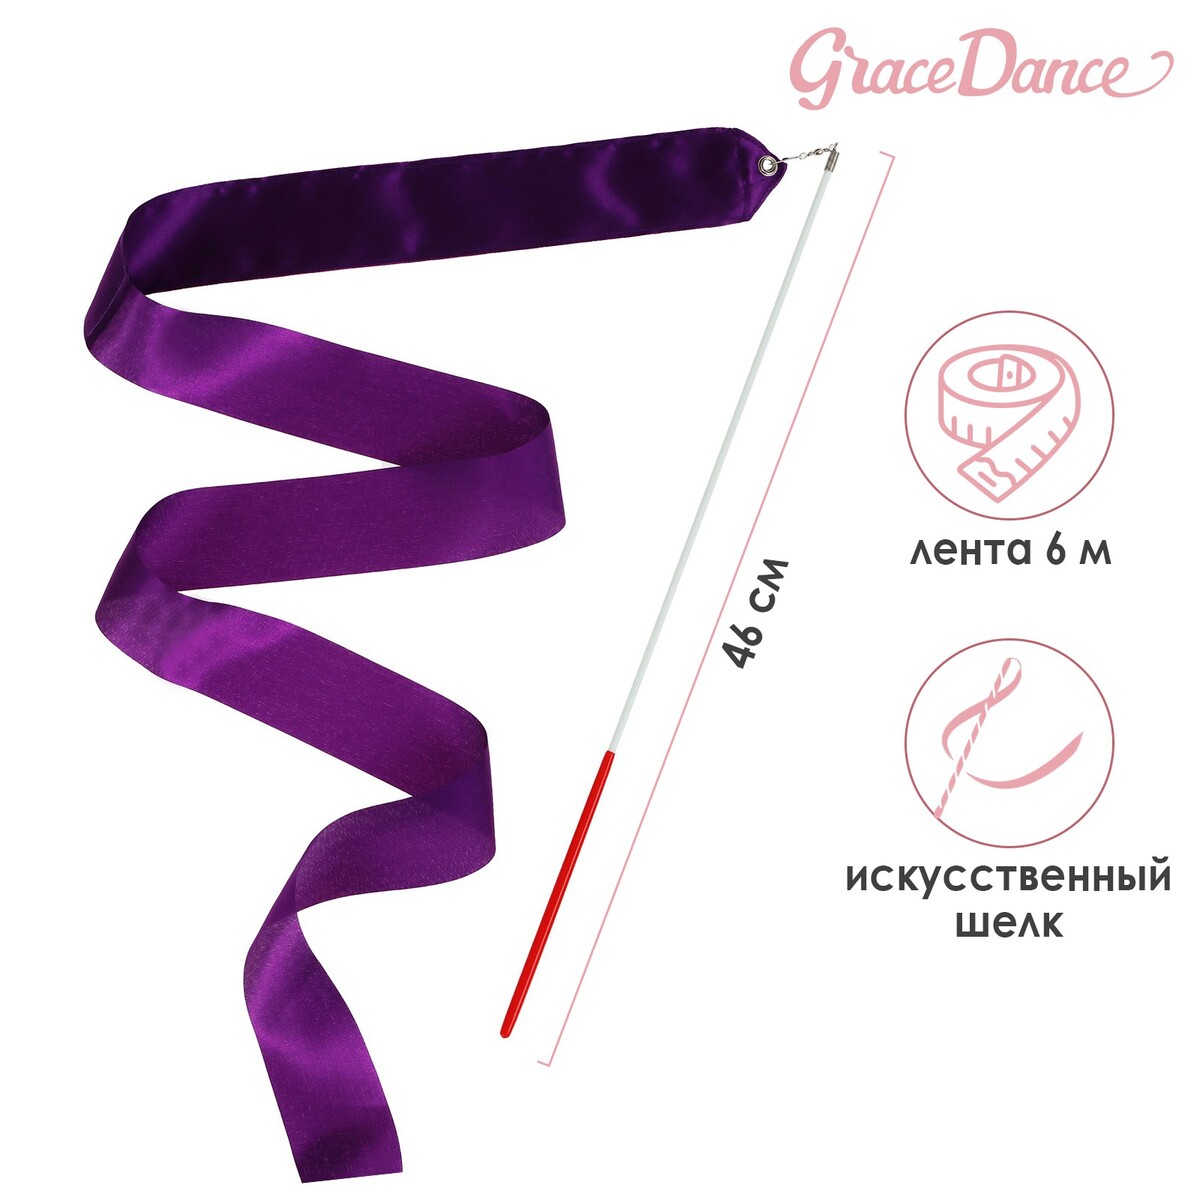 Лента для художественной гимнастики с палочкой grace dance, 6 м, цвет фиолетовый скакалка для художественной гимнастики grace dance 3 м фиолетовый